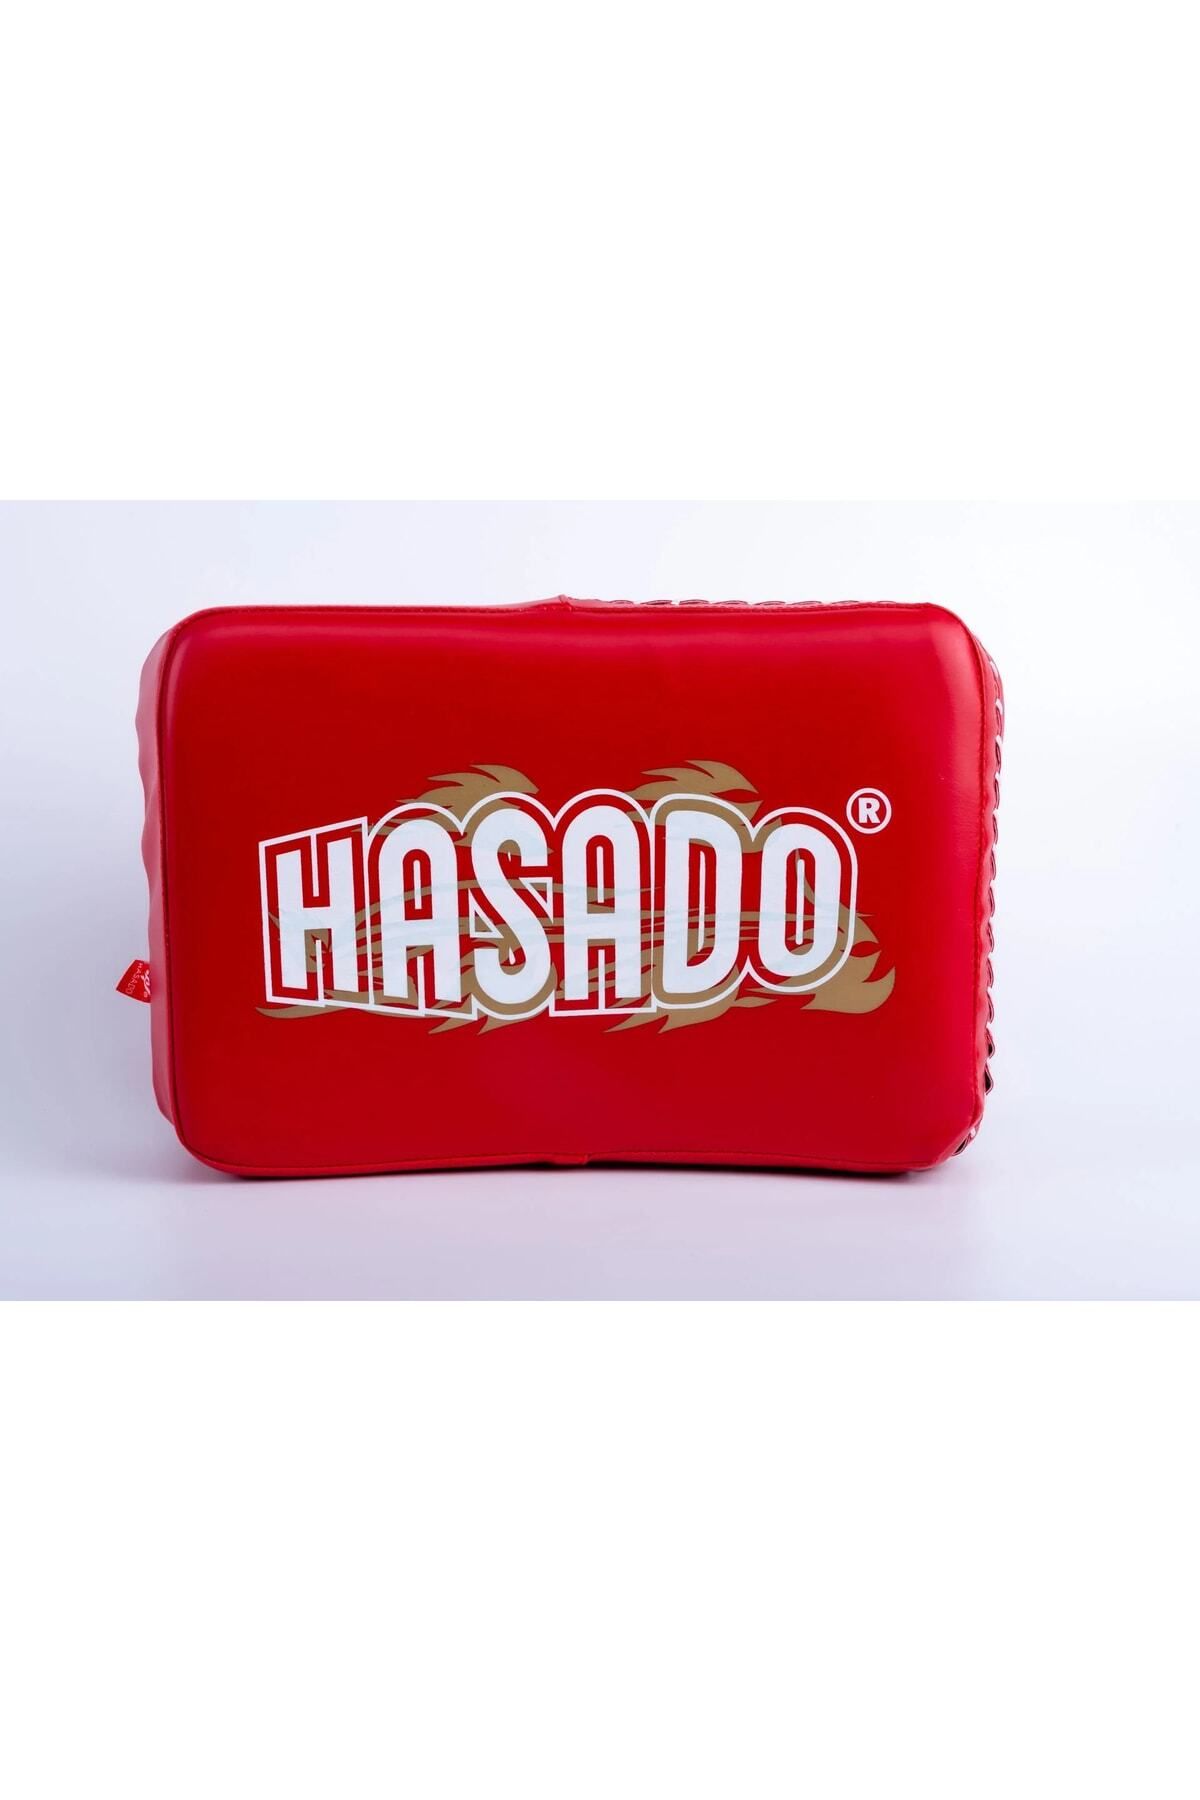 HAŞADO Kırmızı Küçük Eğri Taekwondo, Kickboks, Karate, Mma Darbe Yastık